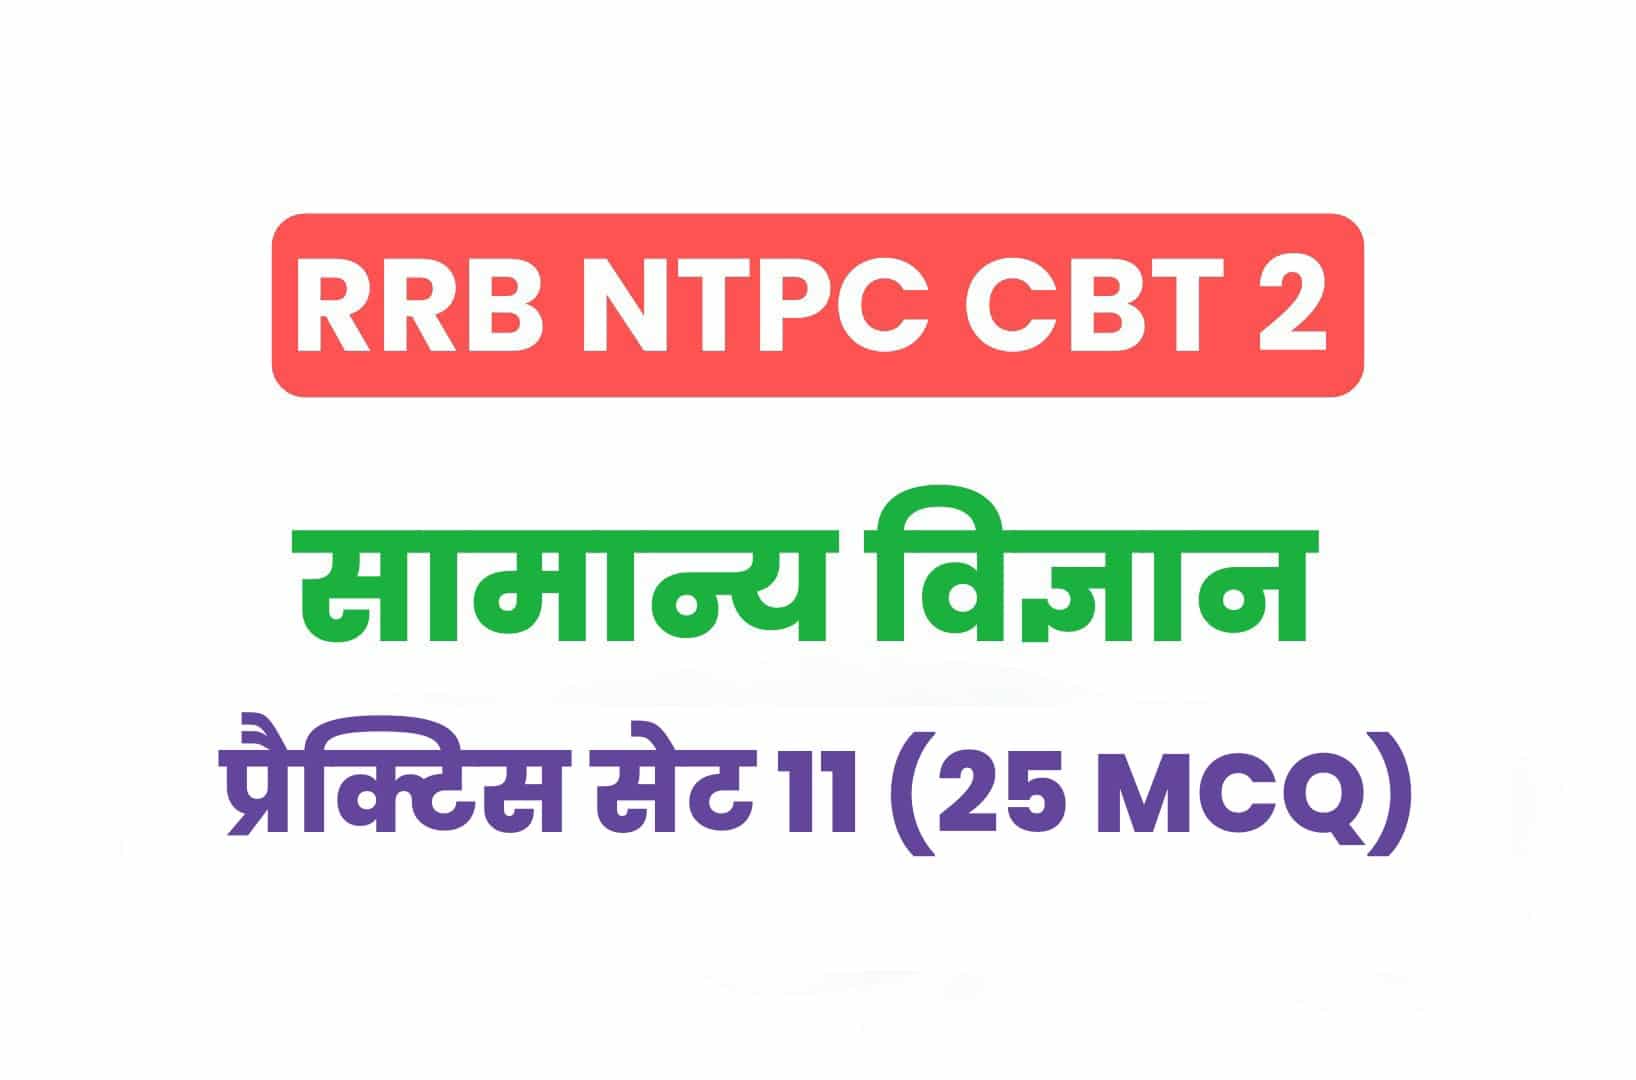 RRB NTPC CBT 2 Science प्रैक्टिस सेट - 11: सामान्य विज्ञान के महत्वपूर्ण प्रश्नों का करें अध्ययन